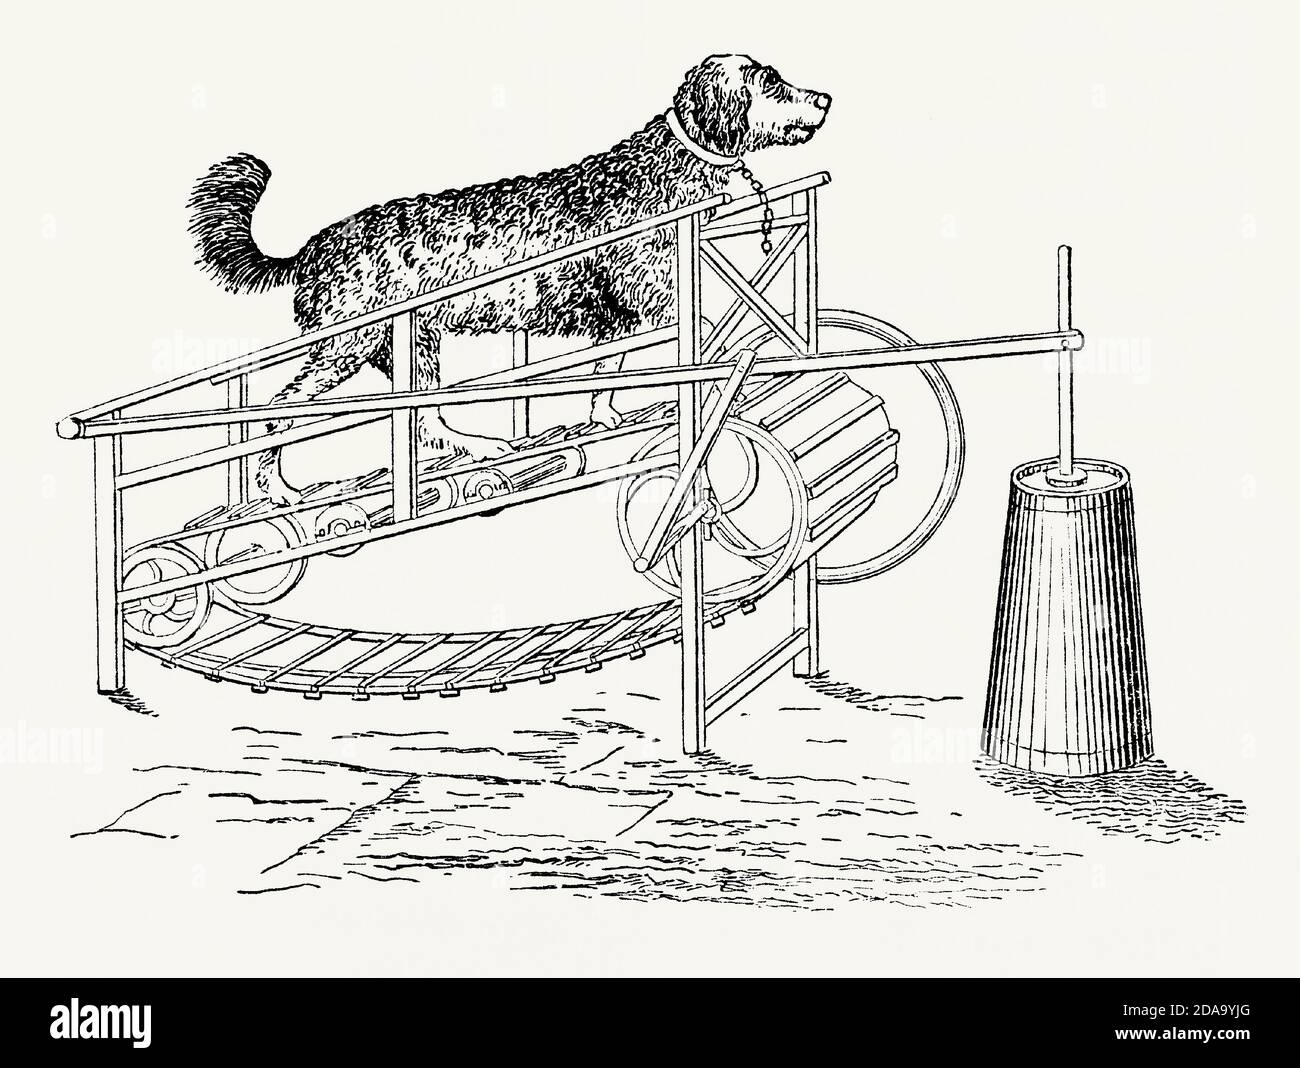 Una vecchia incisione di macchinari alimentati da un cane. E 'da un libro di ingegneria meccanica vittoriana del 1880. Il cane illustrato sta correndo su una cinghia o un tapis roulant e sta guidando un ‘dasher’ in una zanghetta di latte o burro (a destra). Un motore animale è una macchina alimentata da un animale. Cavalli, asini, buoi, cani e umani sono stati tutti utilizzati in questo modo. I cani sono stati usati spesso all'interno delle case. In una cucina un cane (un ‘cane turnspit’ che corre all’interno di una grande ruota di criceto, costretto a muoversi da un pezzo di carbone caldo) potrebbe alimentare uno spiedo rotante mediante un meccanismo a catena. Foto Stock